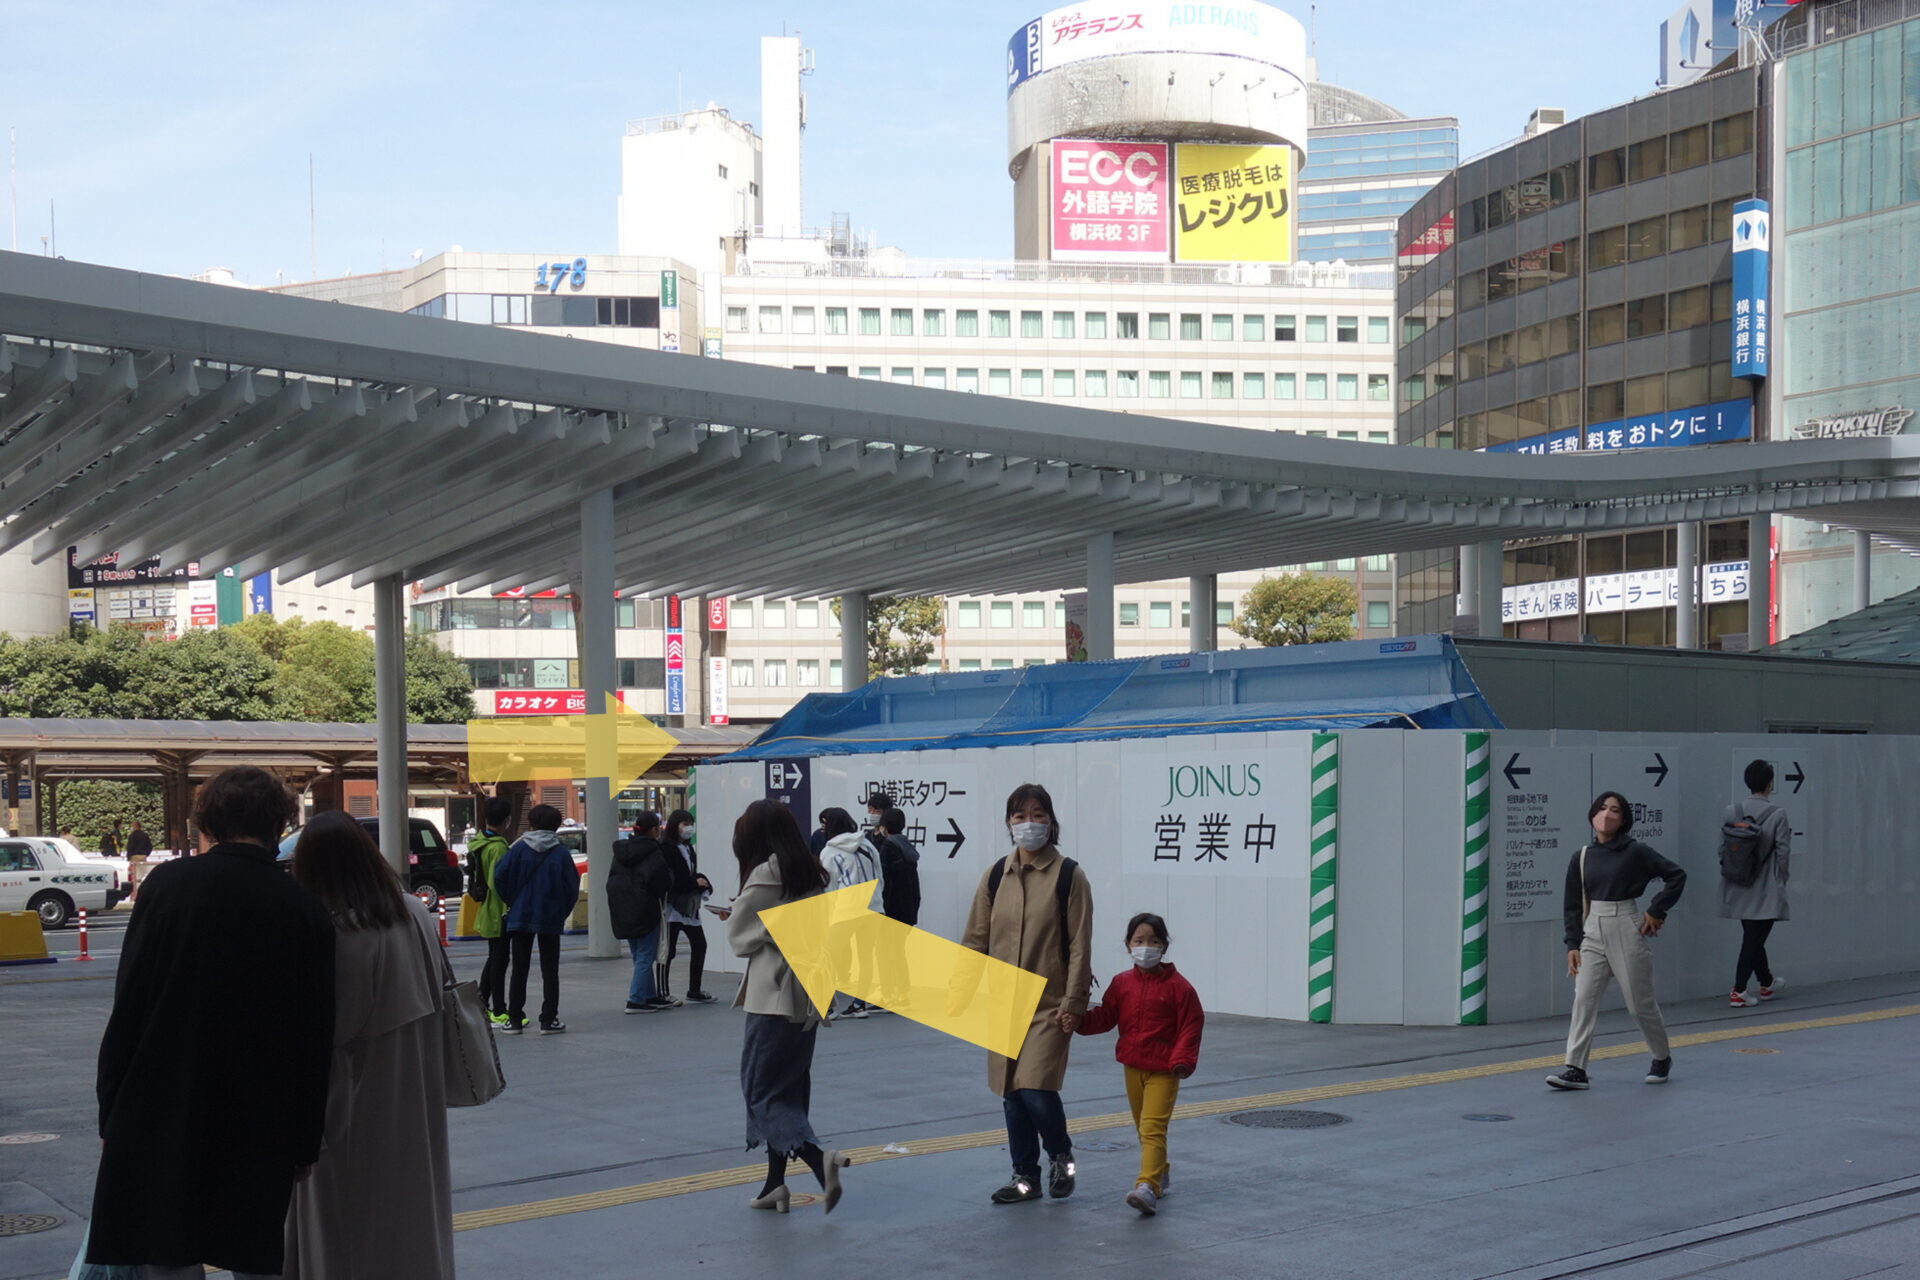 結婚相談所ハッピーコネクトまでの道案内図、横浜駅の外、矢印２つ